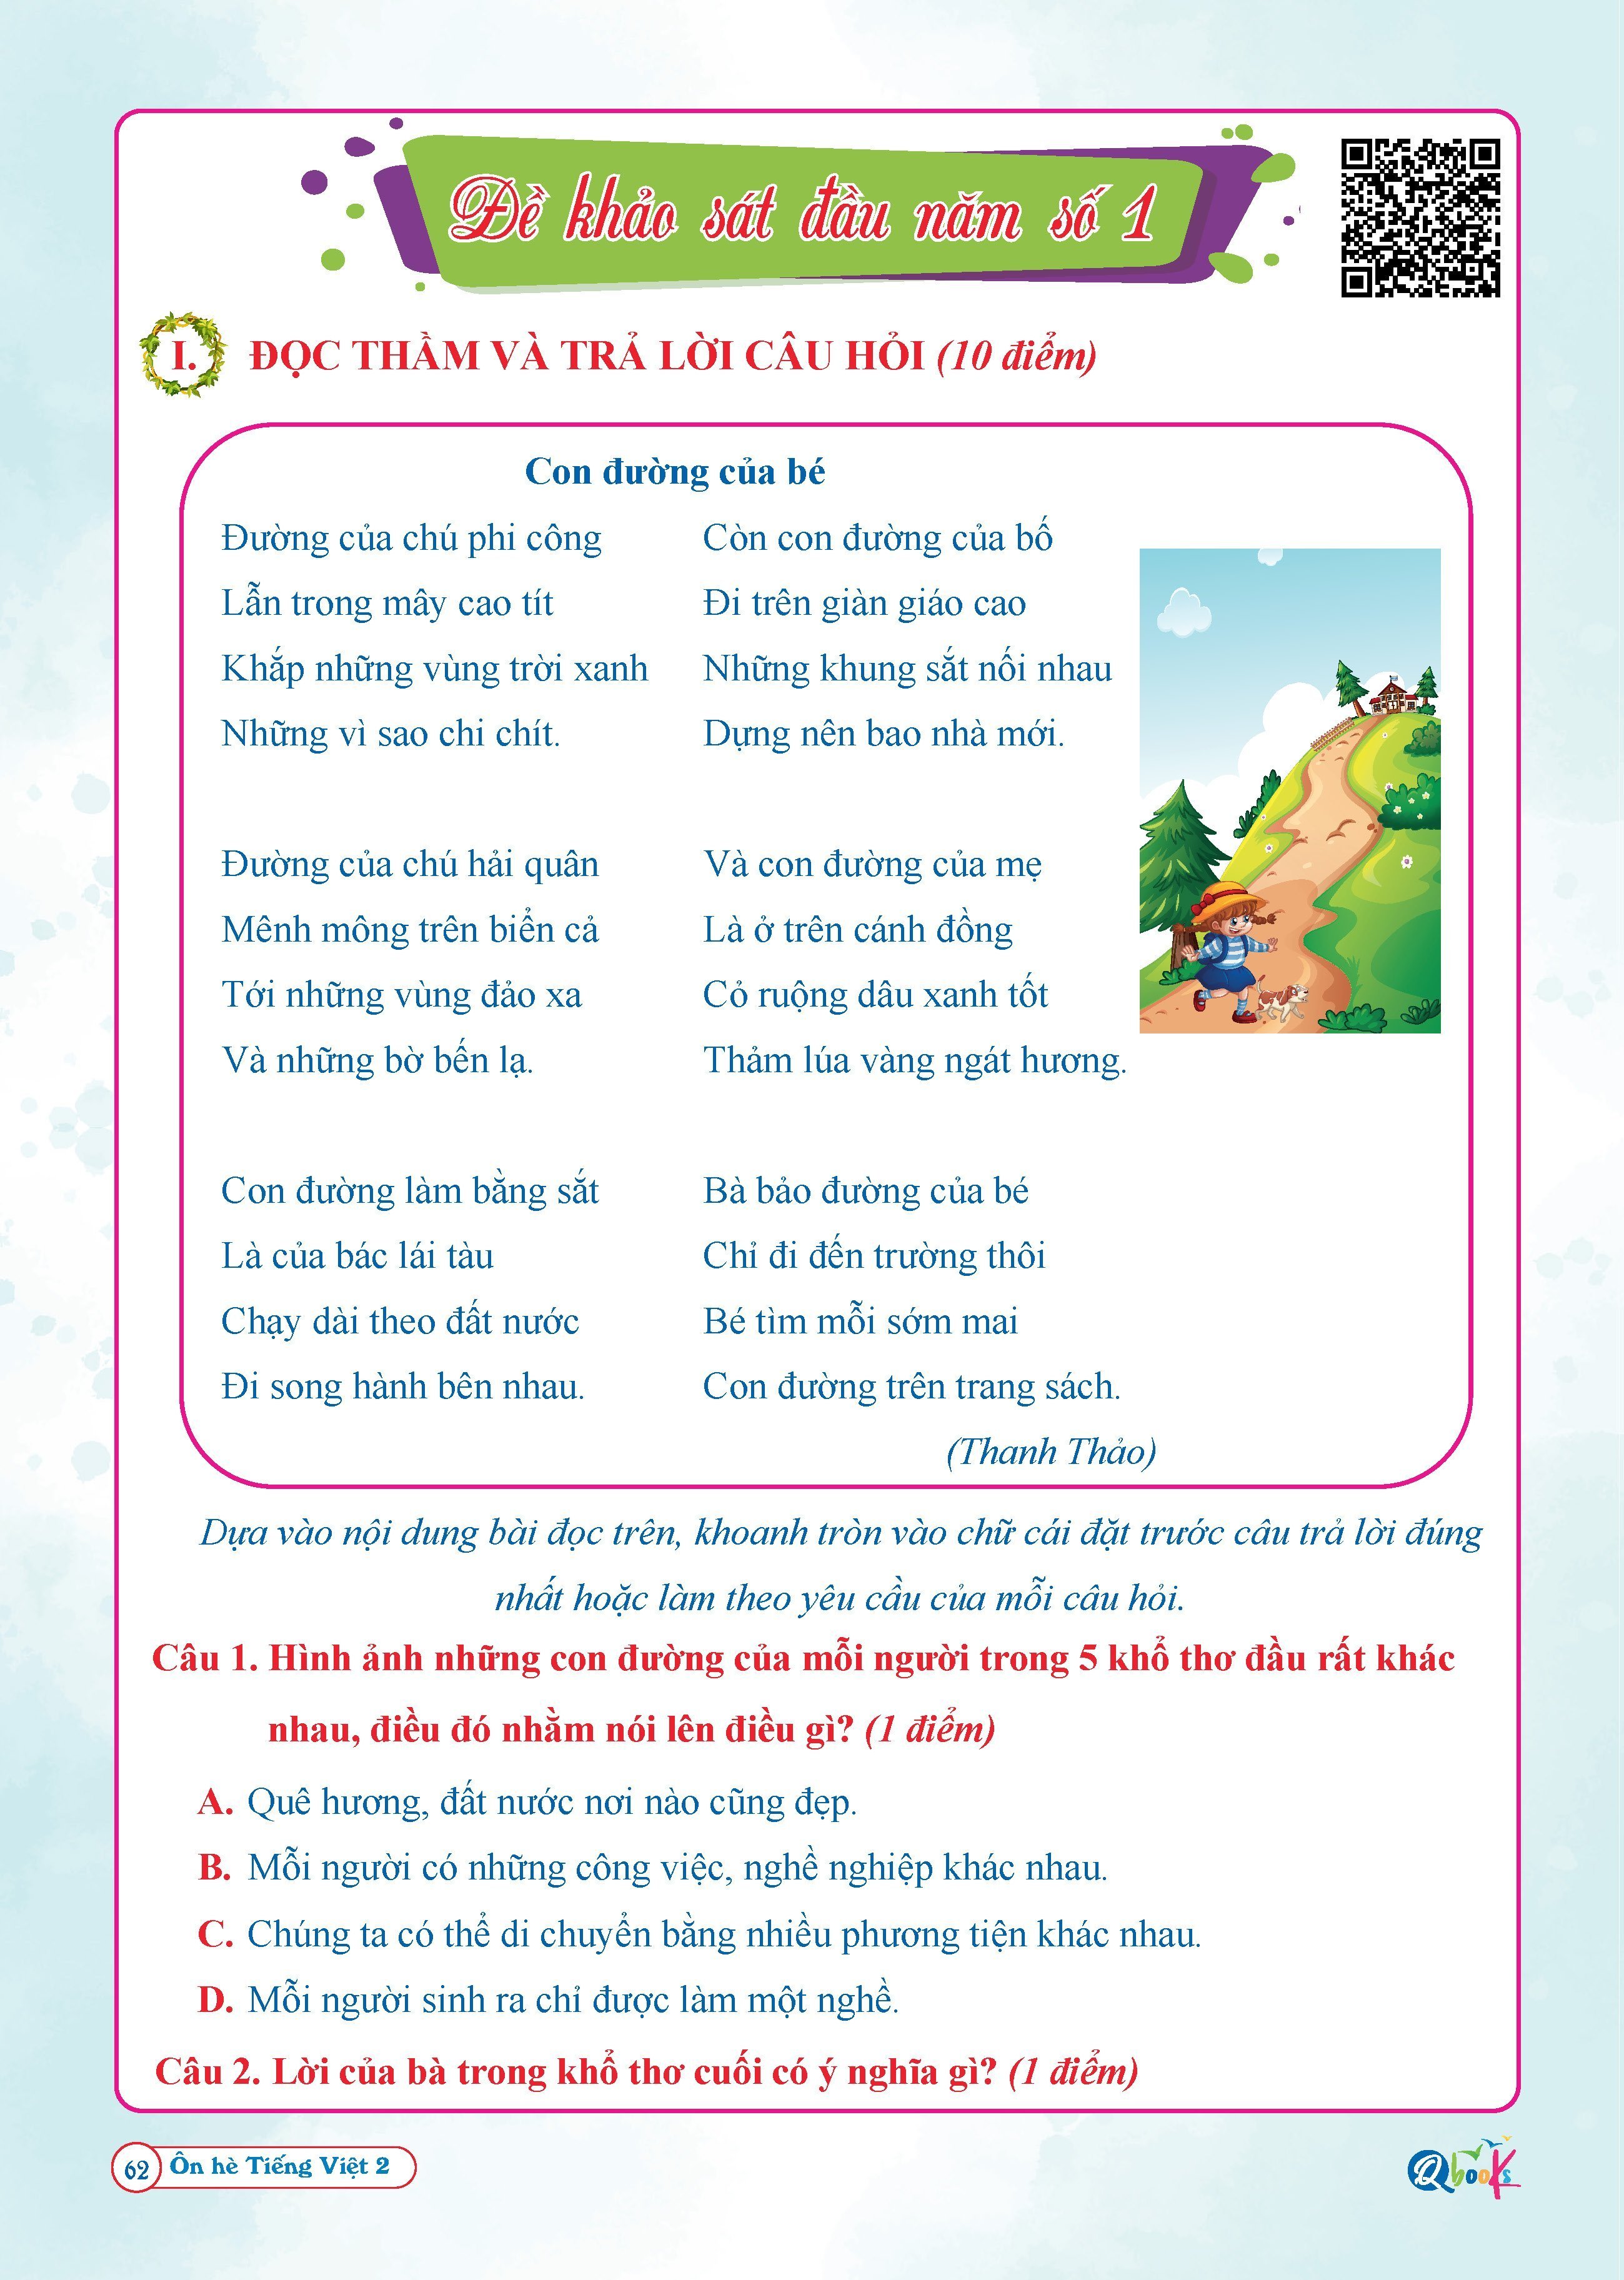 Combo Ôn Hè Toán và Tiếng Việt 2 - Chương Trình Mới - Dành cho học sinh lớp 2 lên 3 (2 cuốn)